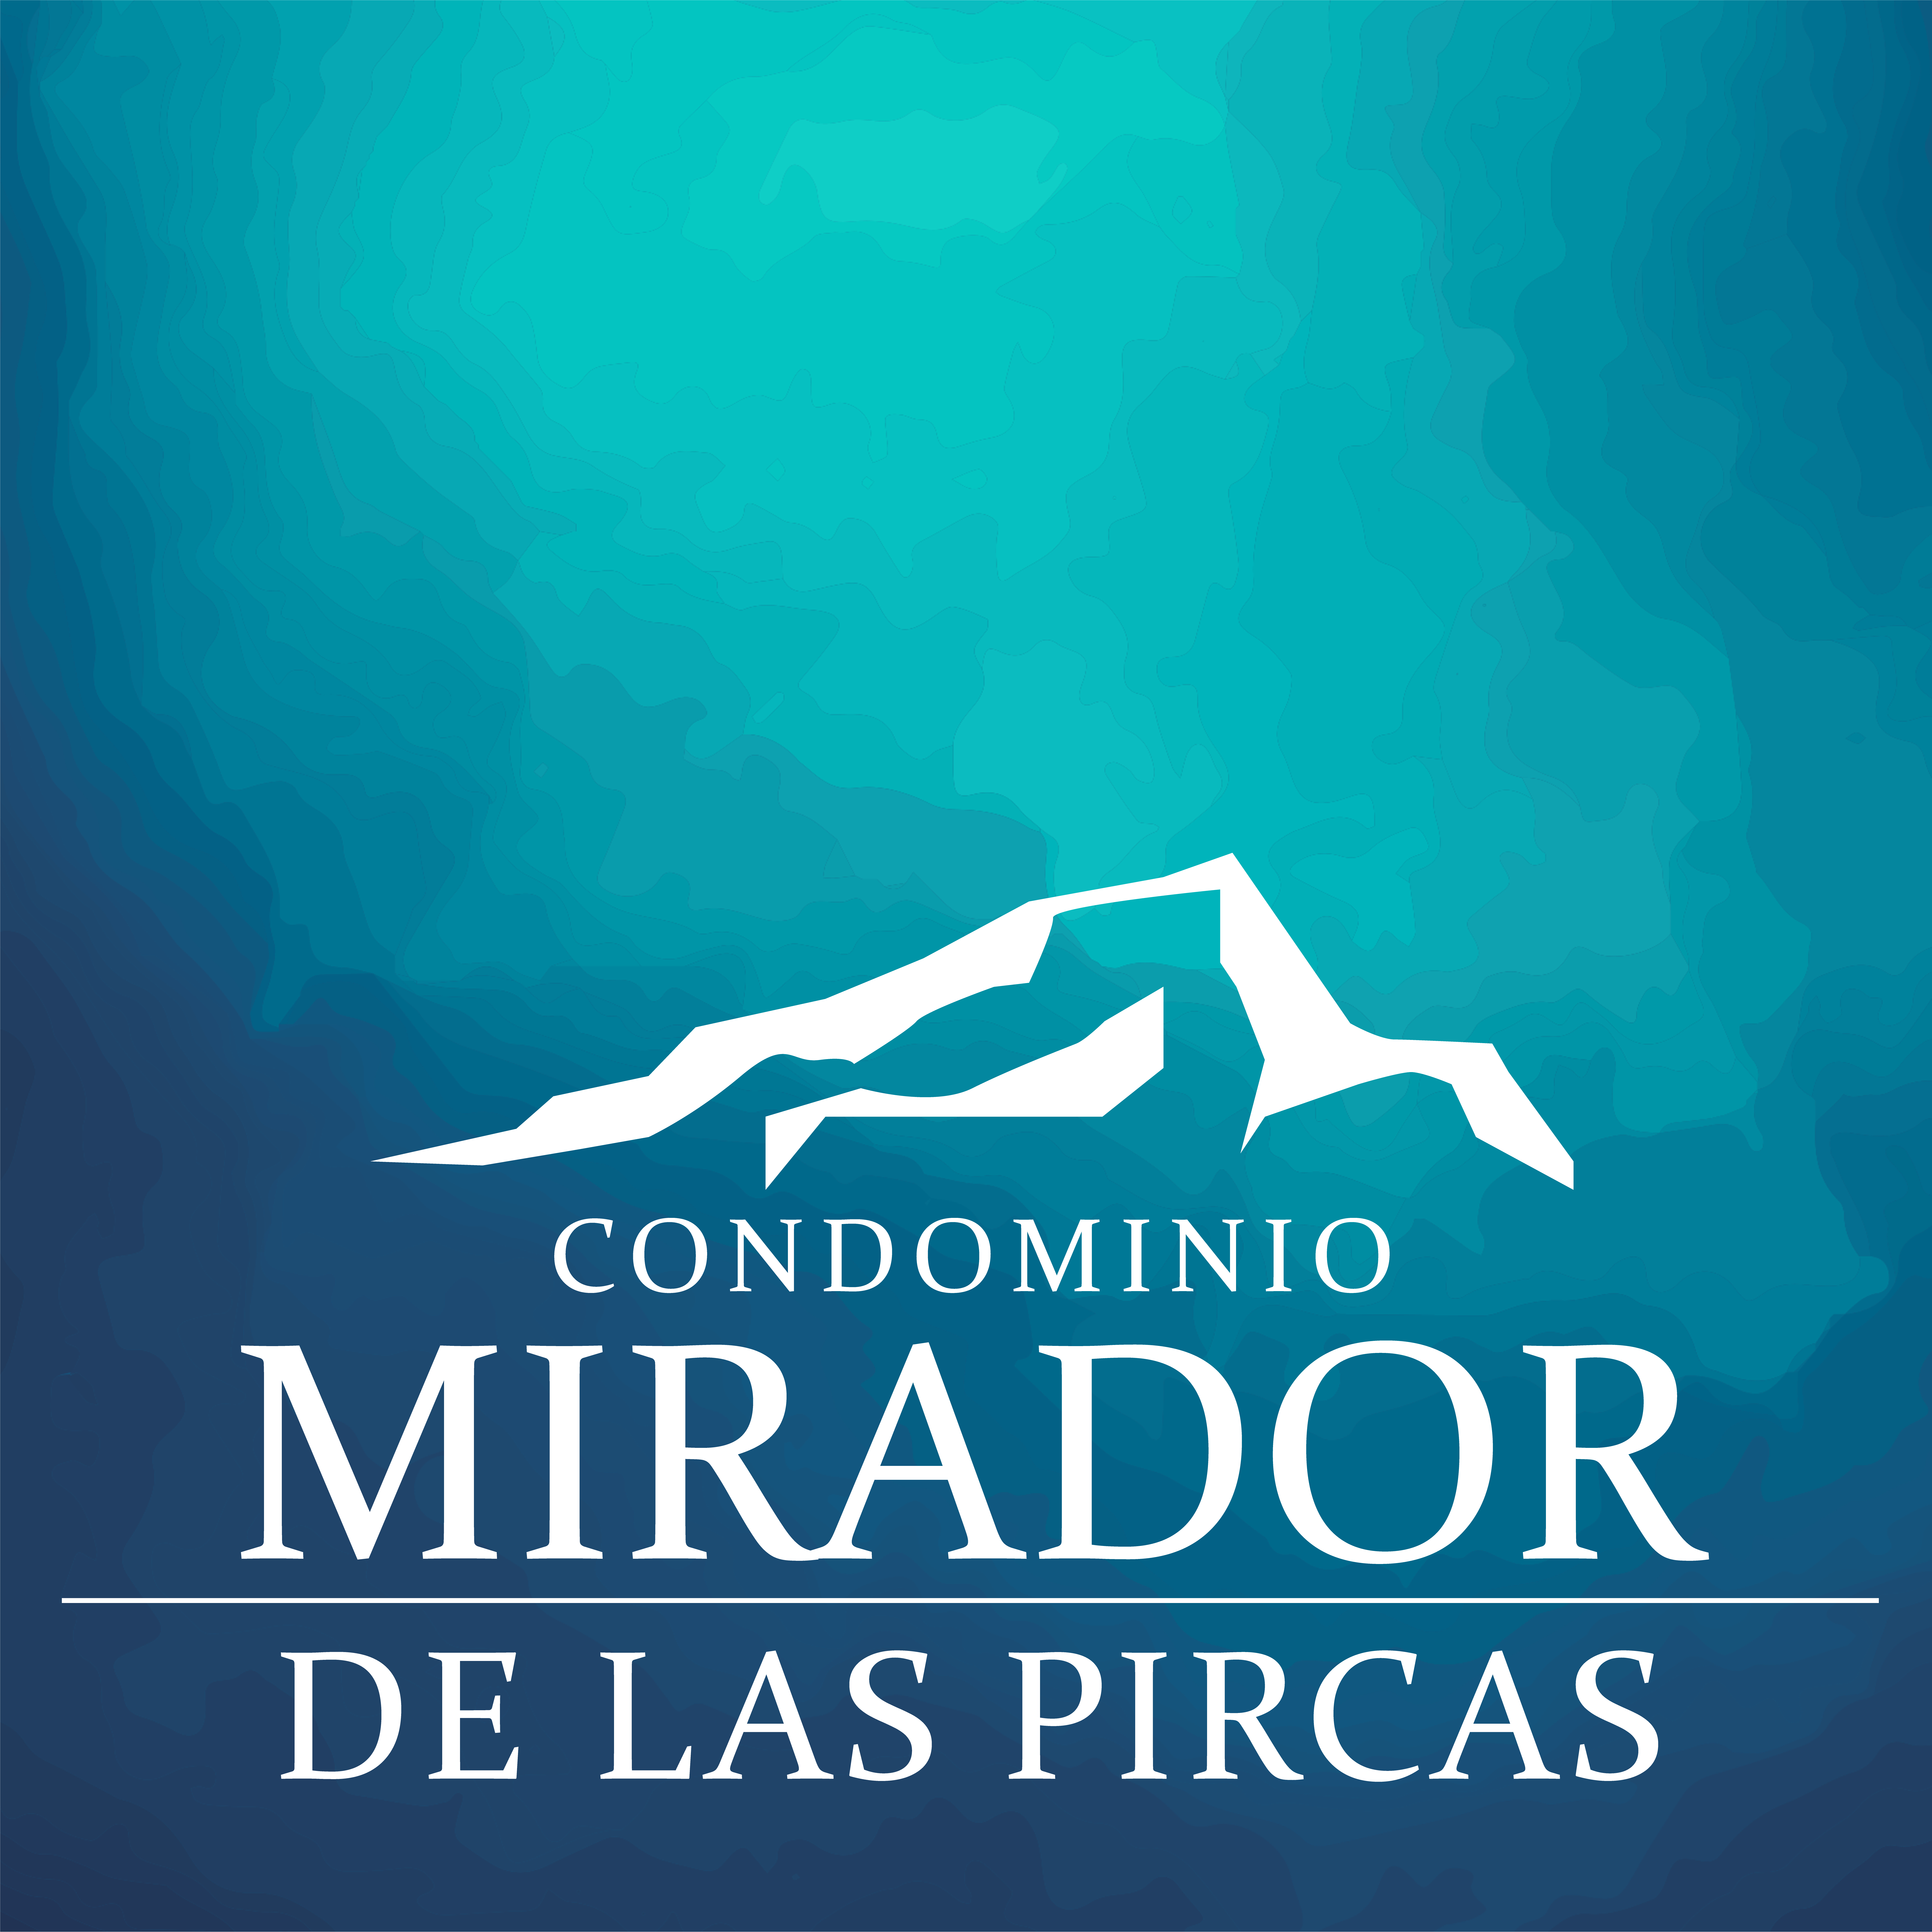 LOGO EL MIRADOR DE LAS PIRCAS 26.10.2020 (2)